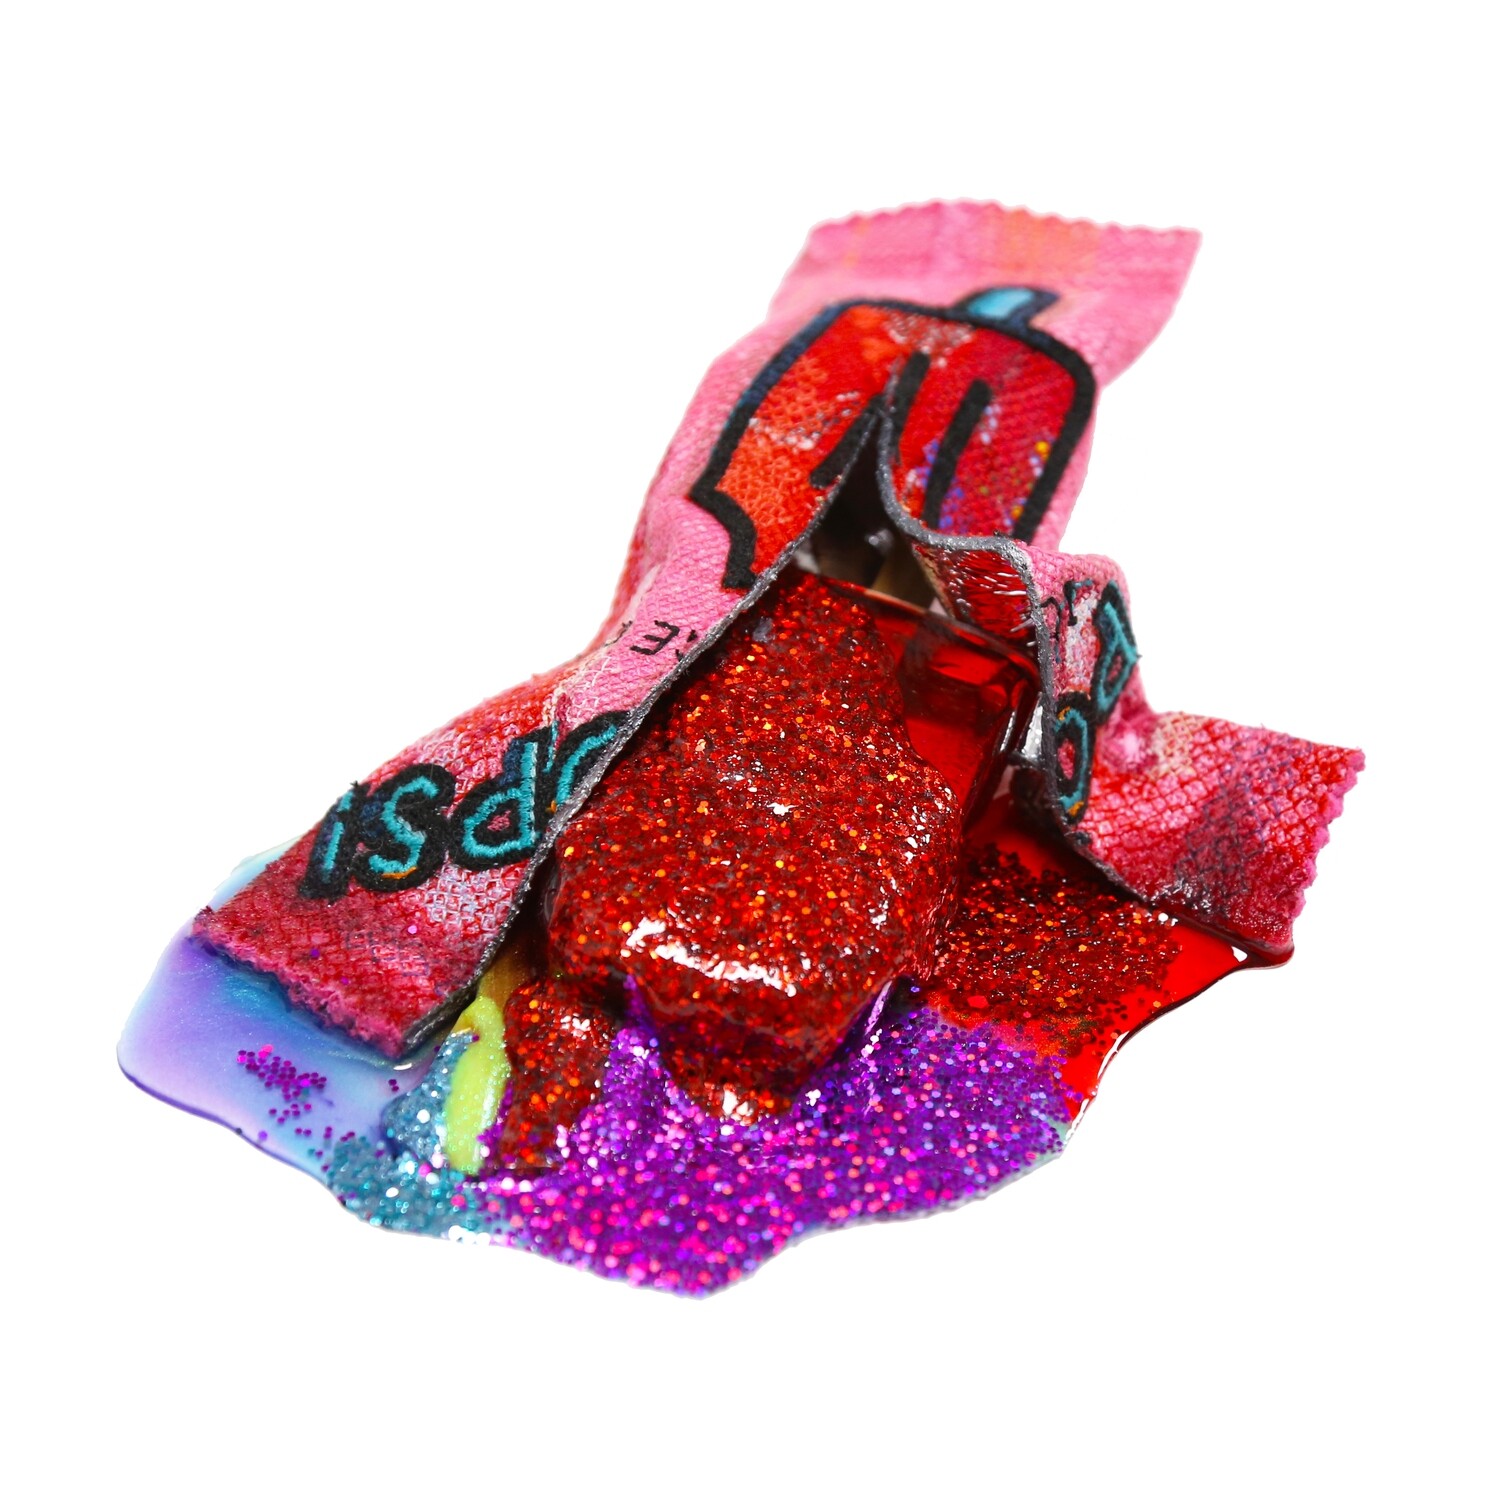 Melting Popsicle Art - Glitter Dreamsicle - Original Melting Pops